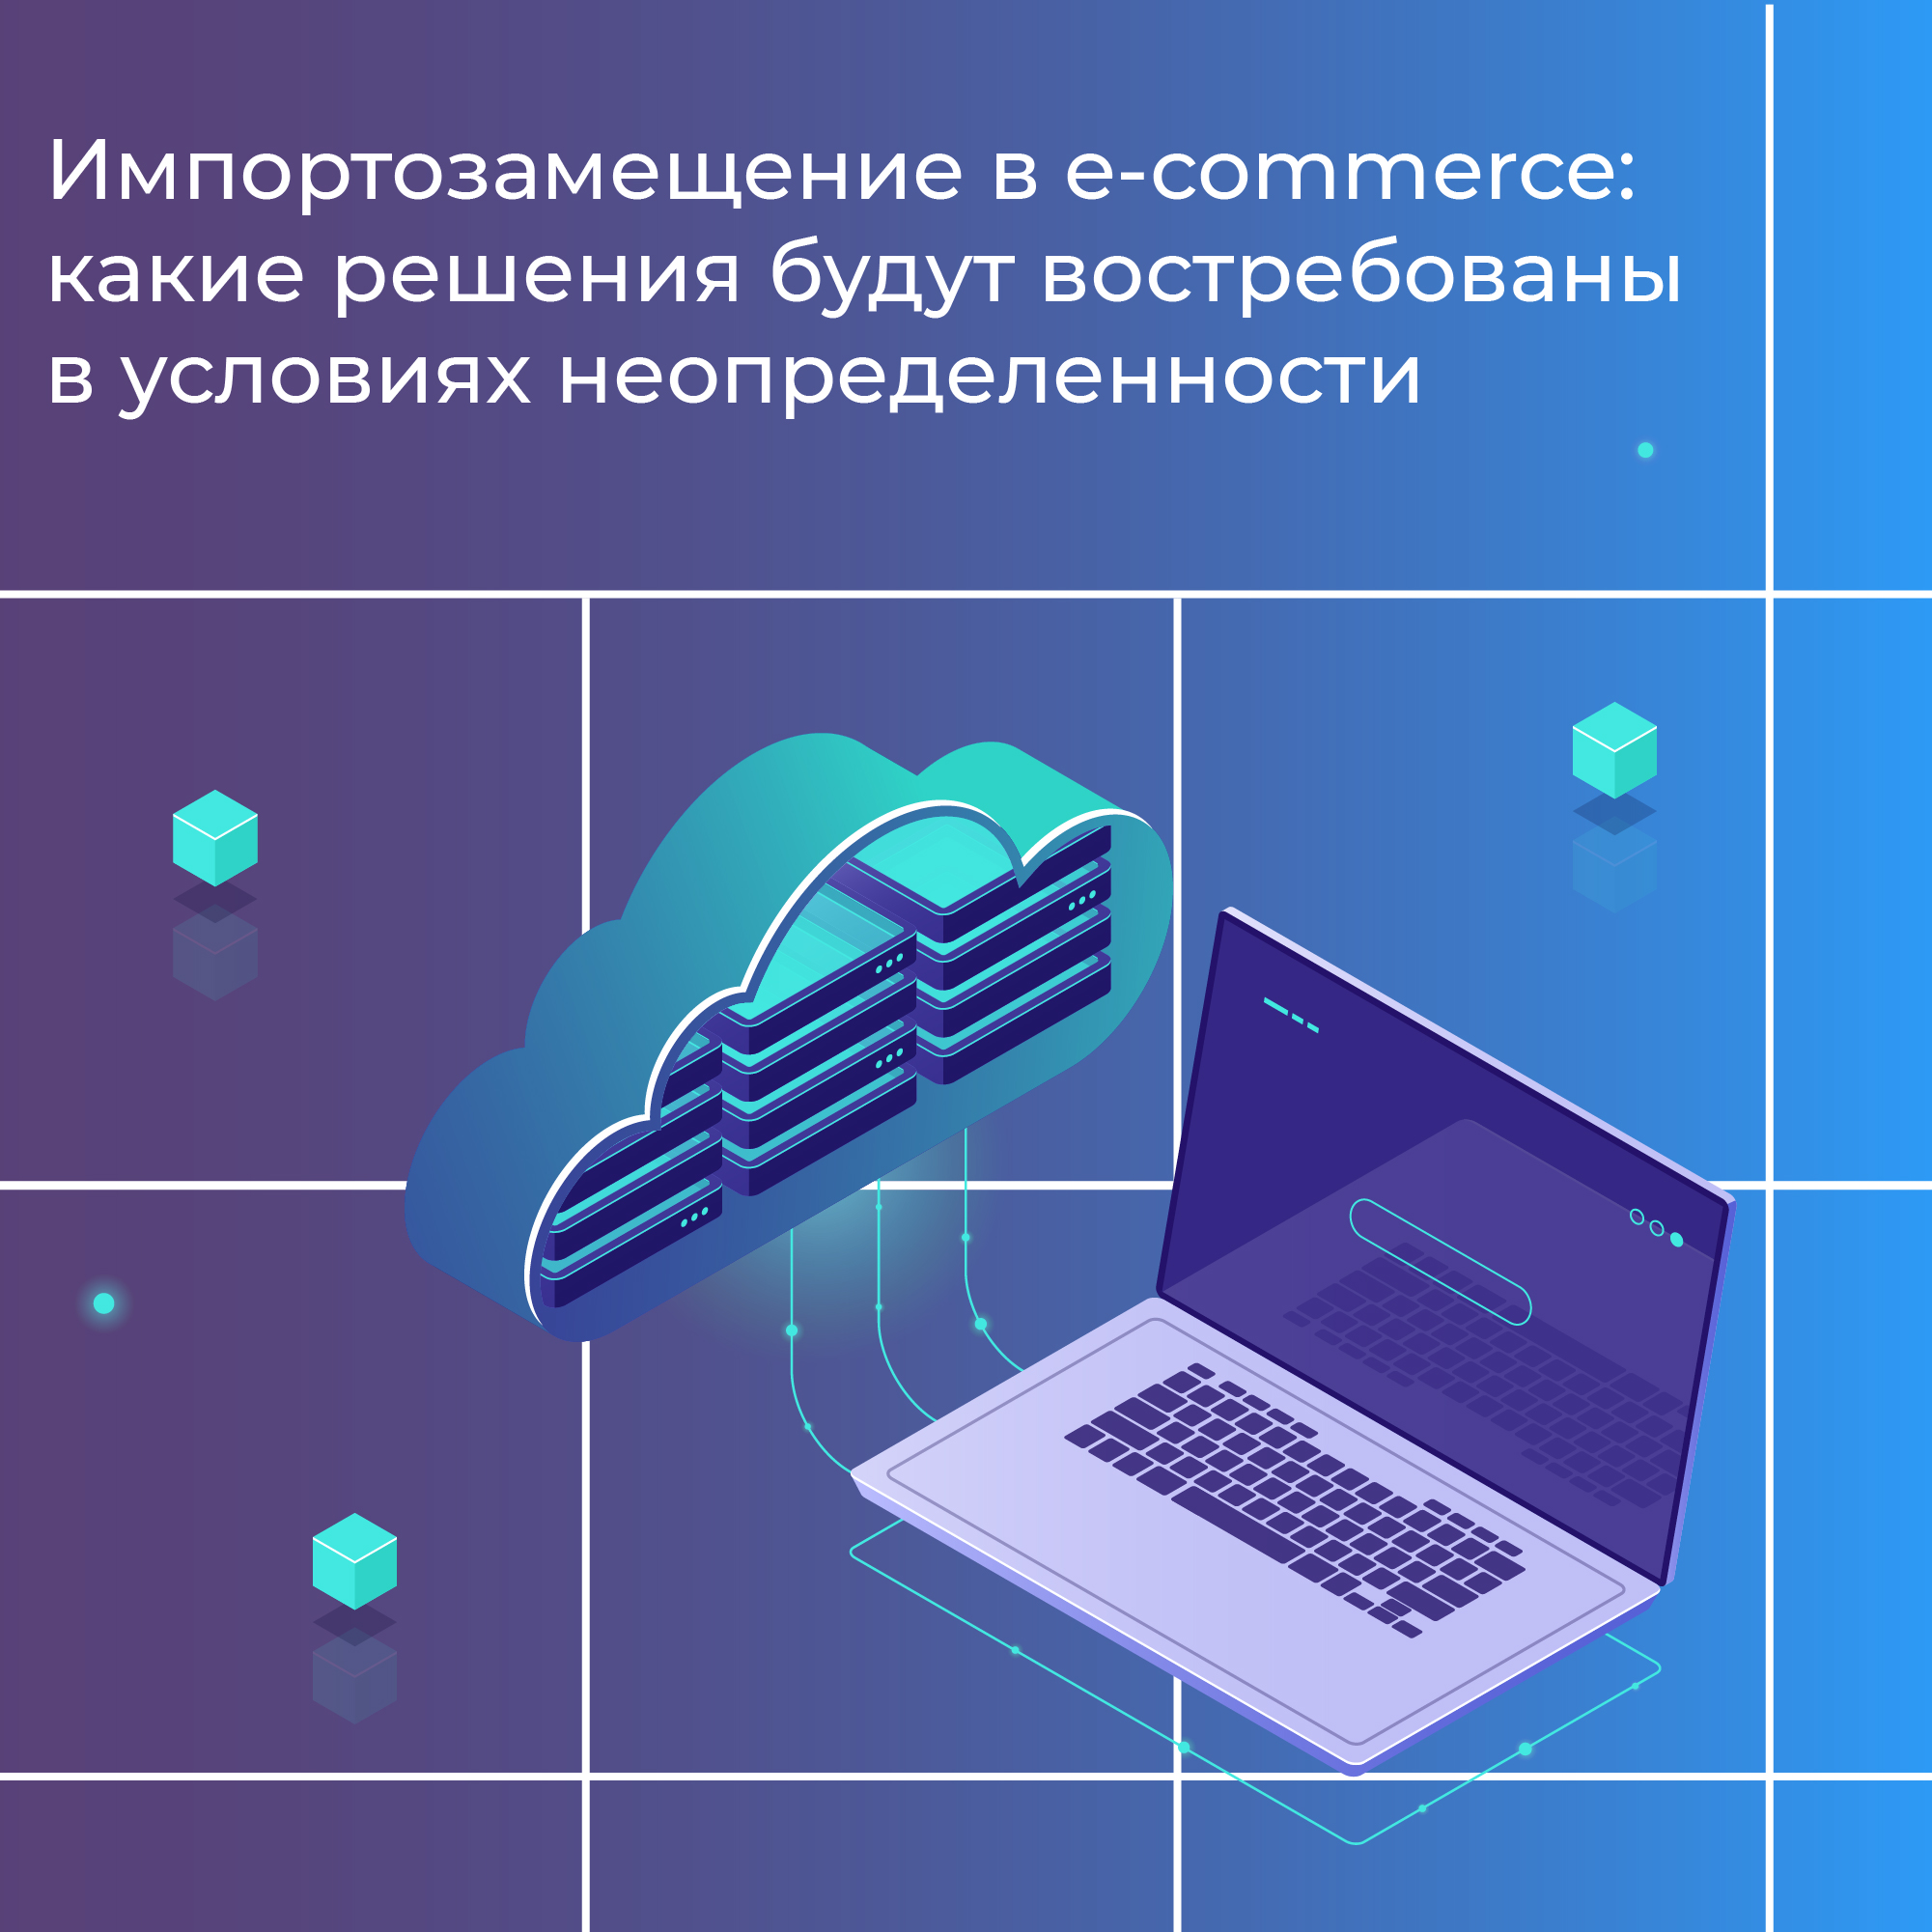 Российские аналоги программного обеспечения в e-commerce: какие решения для бизнеса будут востребованы в условиях неопределенности